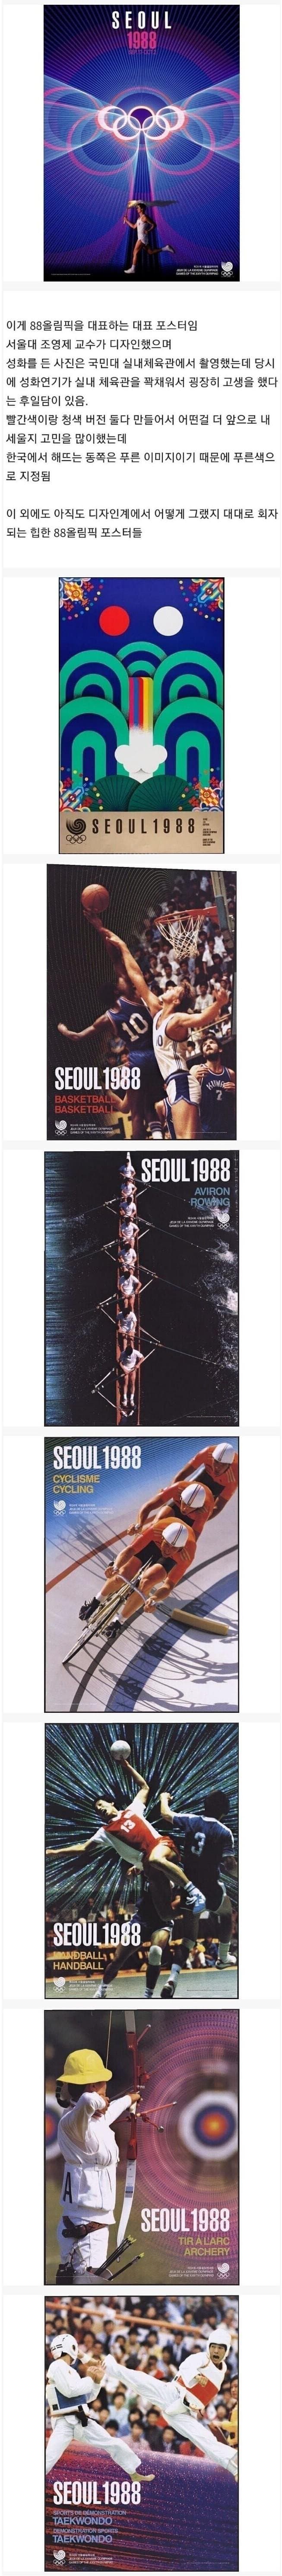 레전드로 회자되는 88 올림픽 포스터